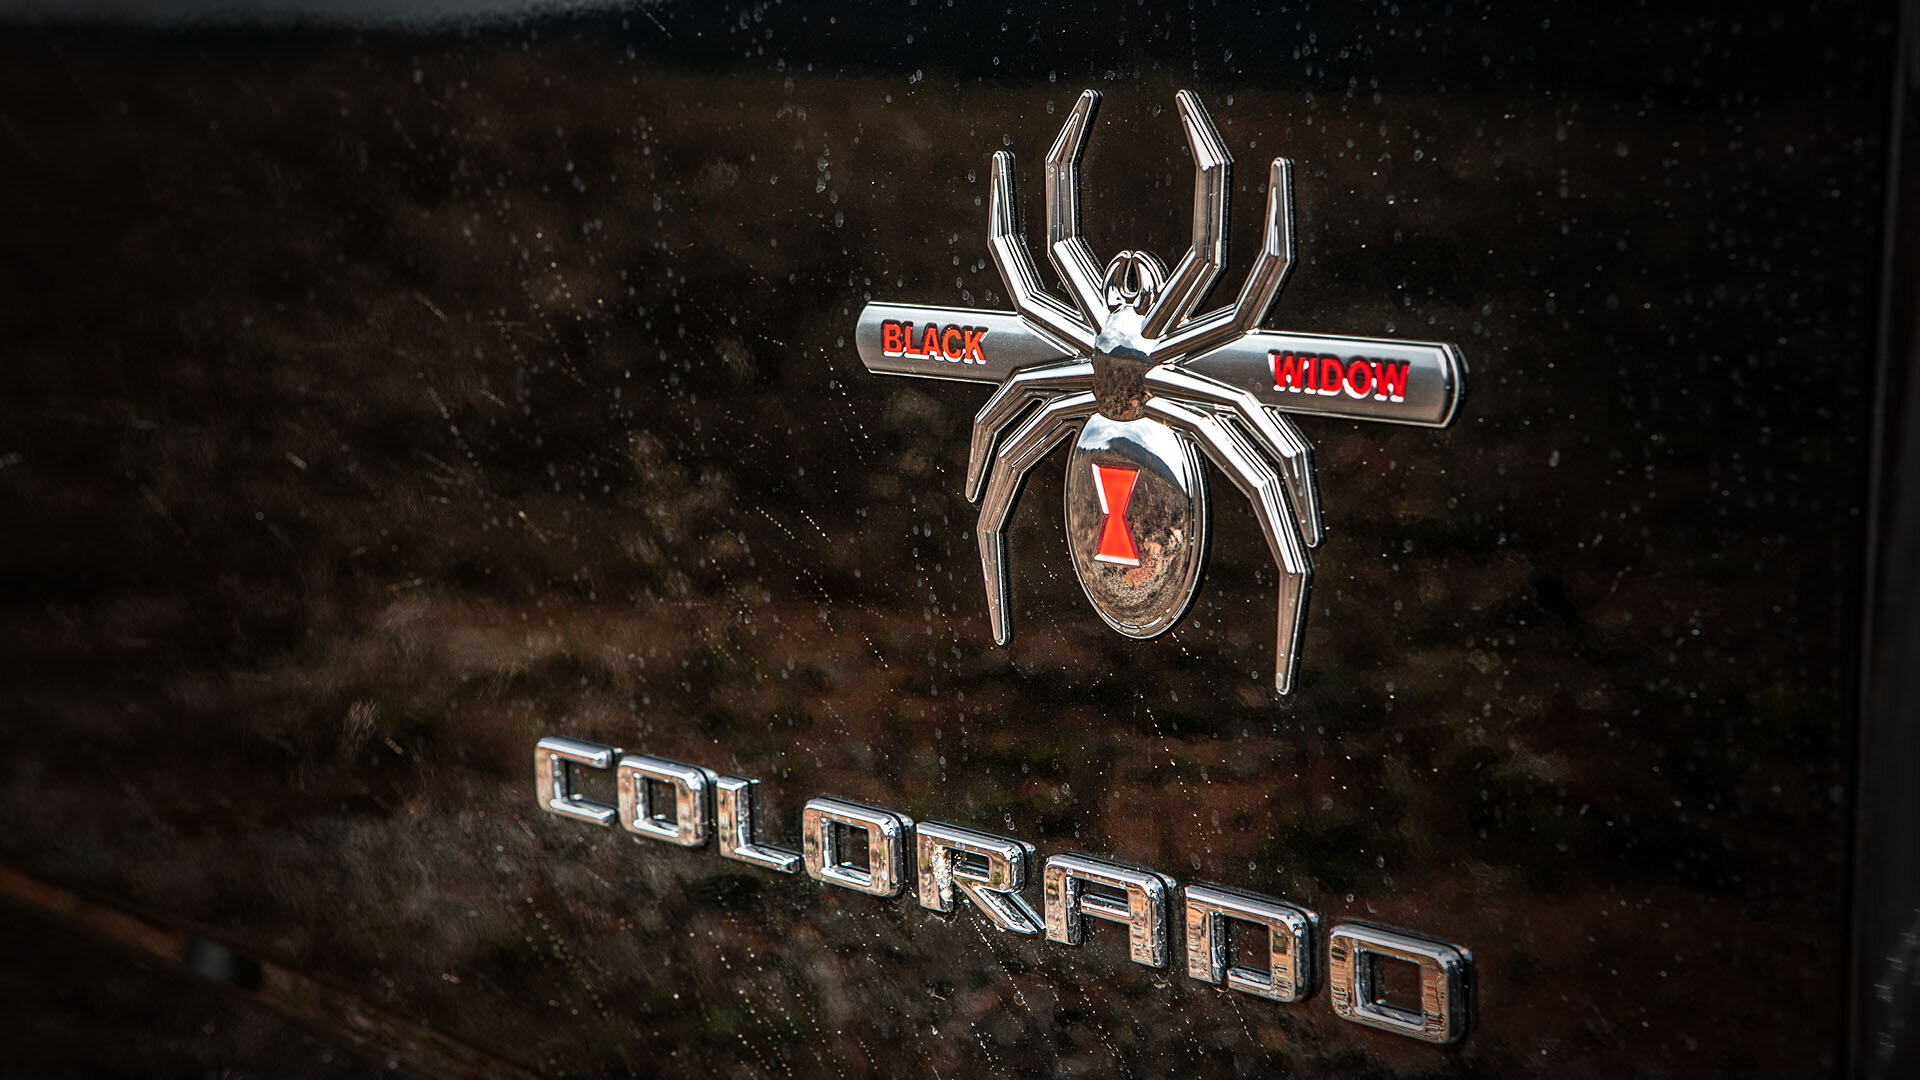 Black Widow Chevy Colorado badging